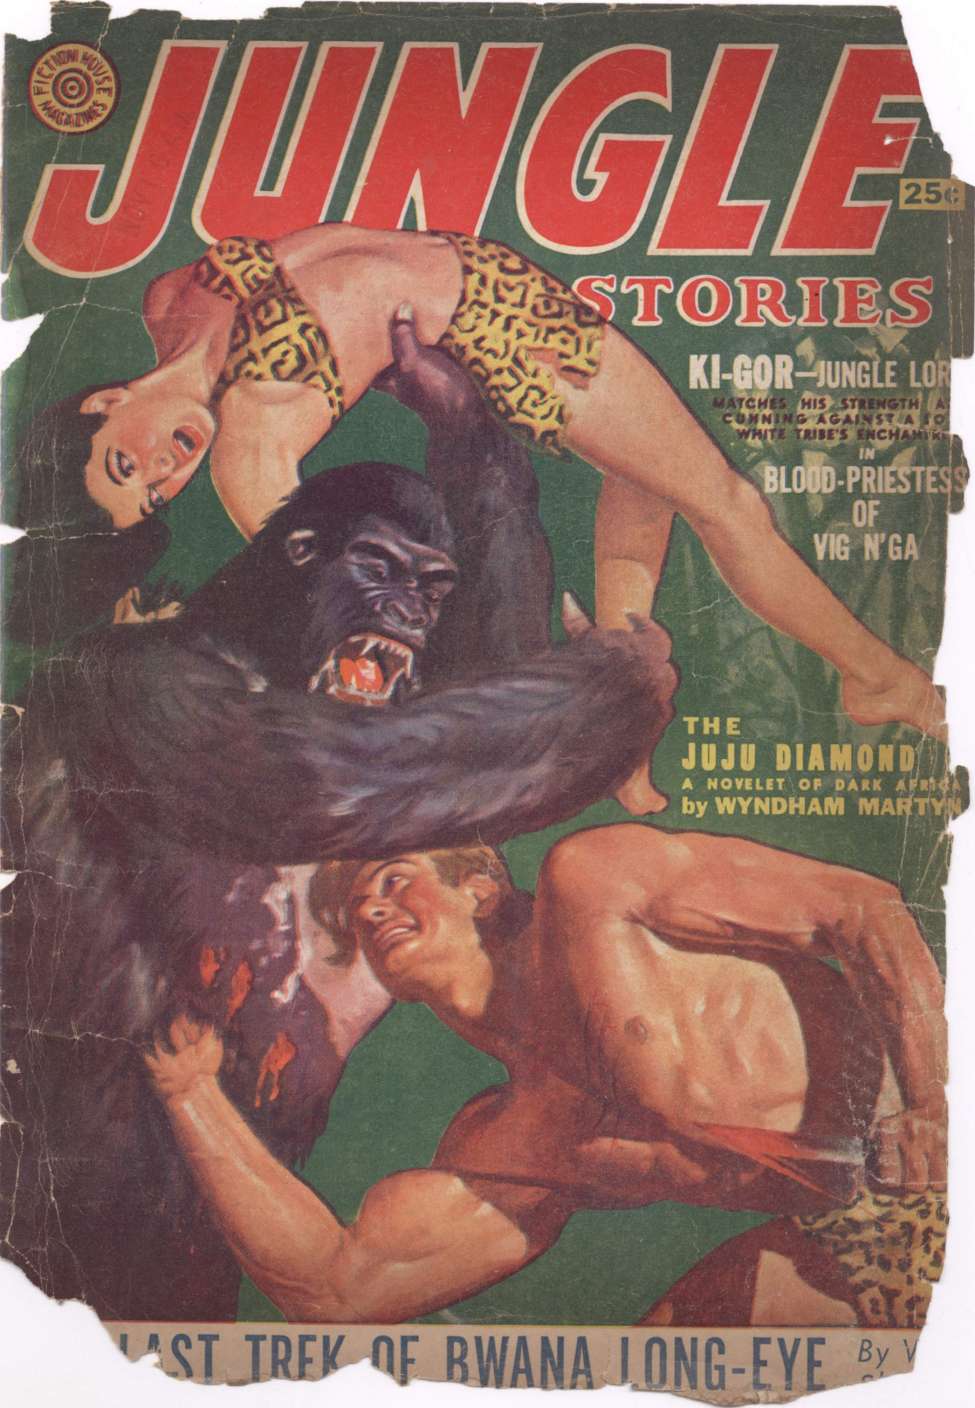 Book Cover For Jungle Stories v5 4 - The Last Trek of Bwana Long-Eye - Walter James Sheldon